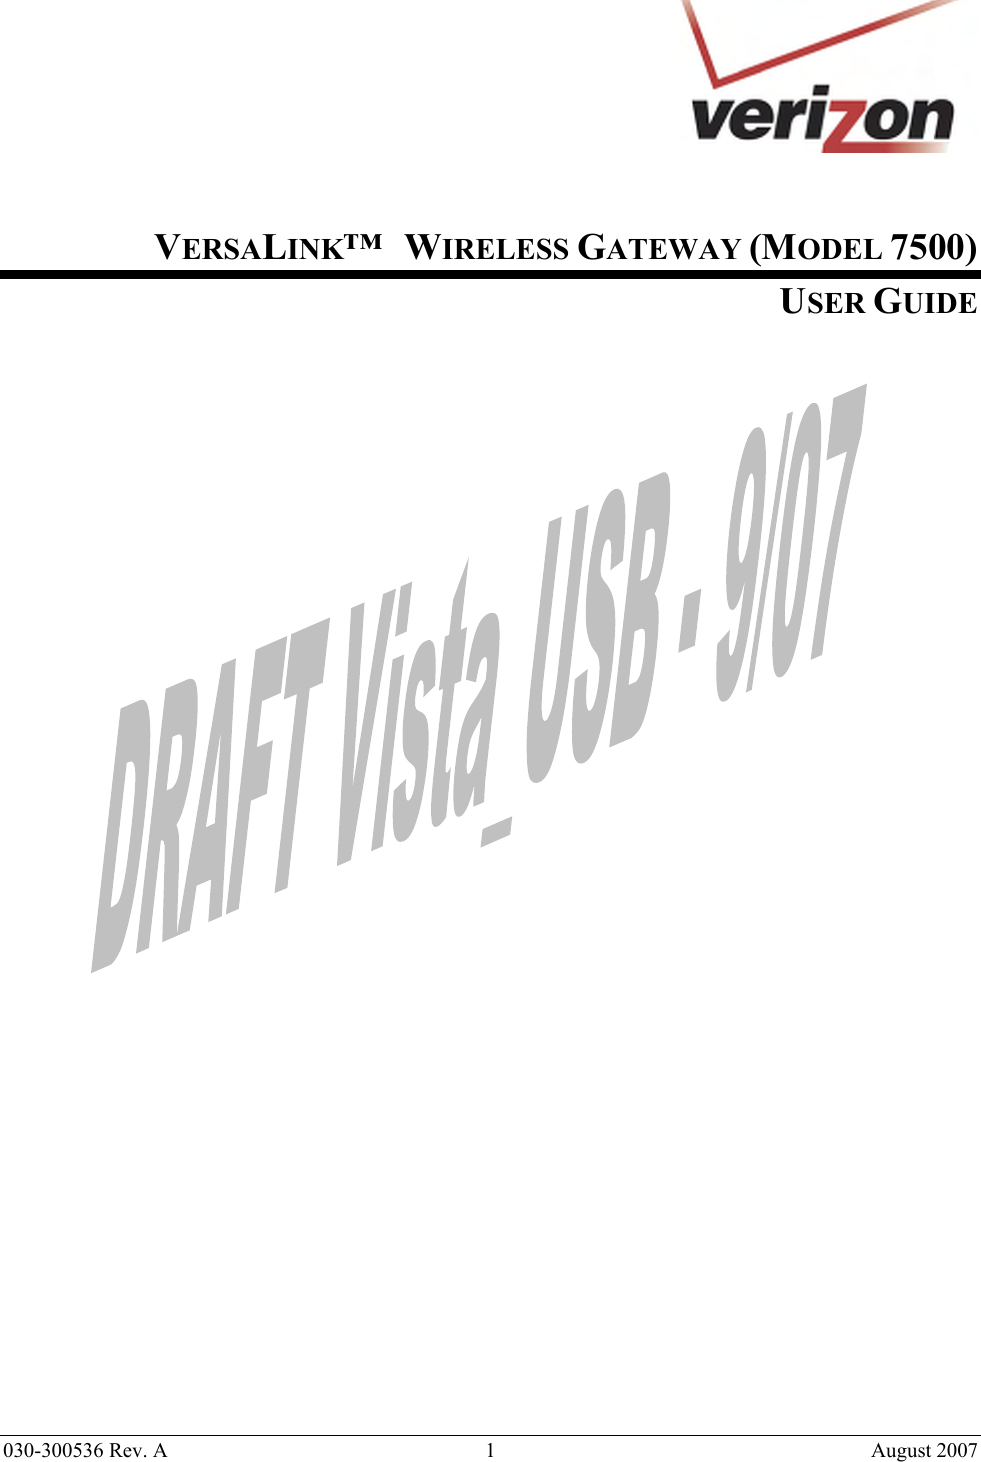  030-300536 Rev. A  1       August 2007    VERSALINK™   WIRELESS GATEWAY (MODEL 7500) USER GUIDE                        